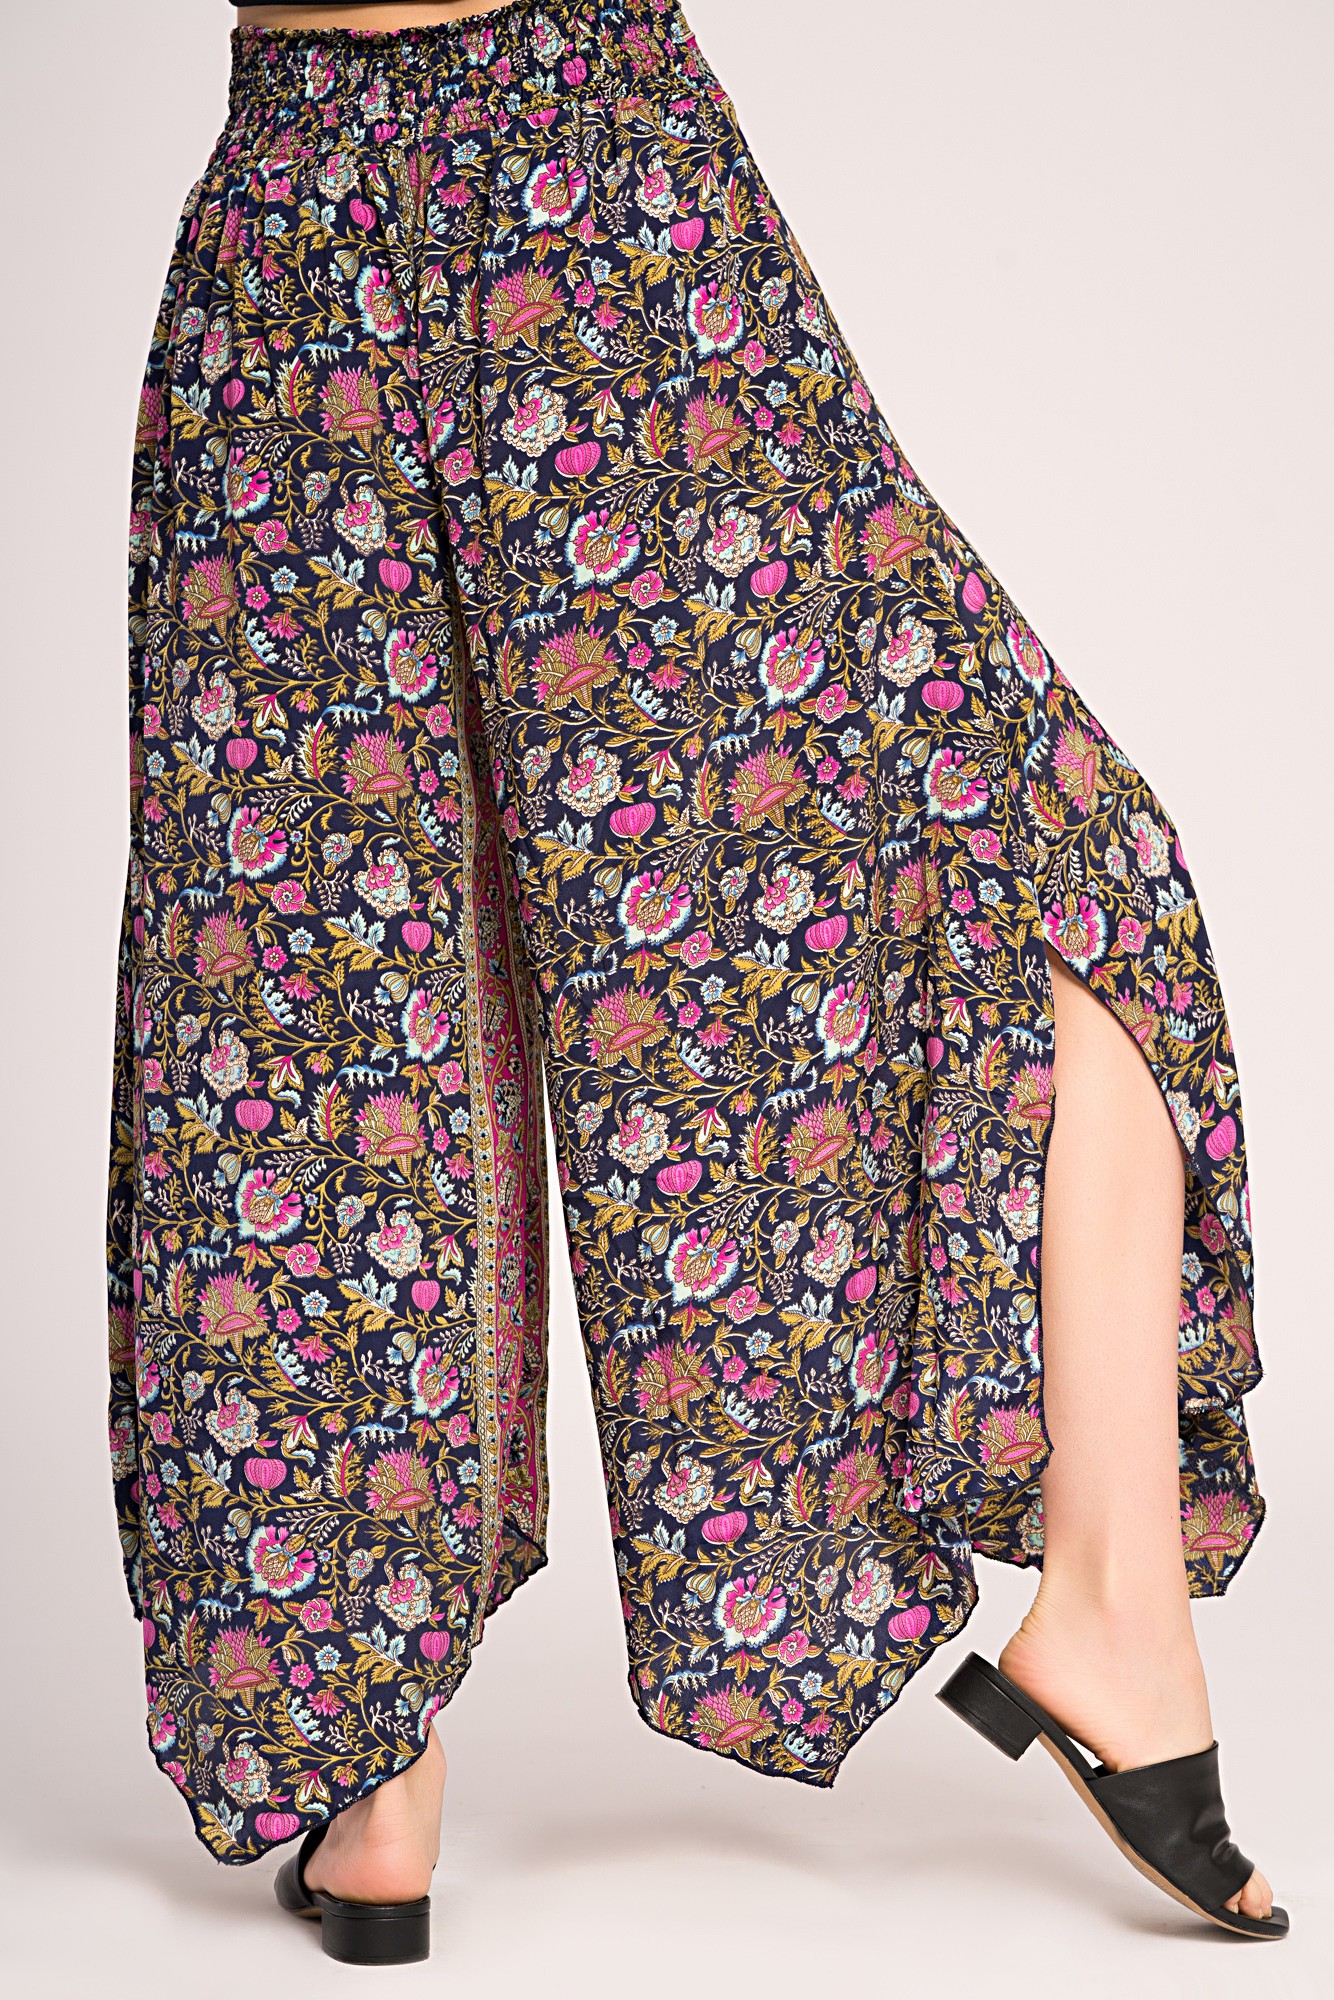 Pantaloni din matase asimetrici bleumarin cu flori roz